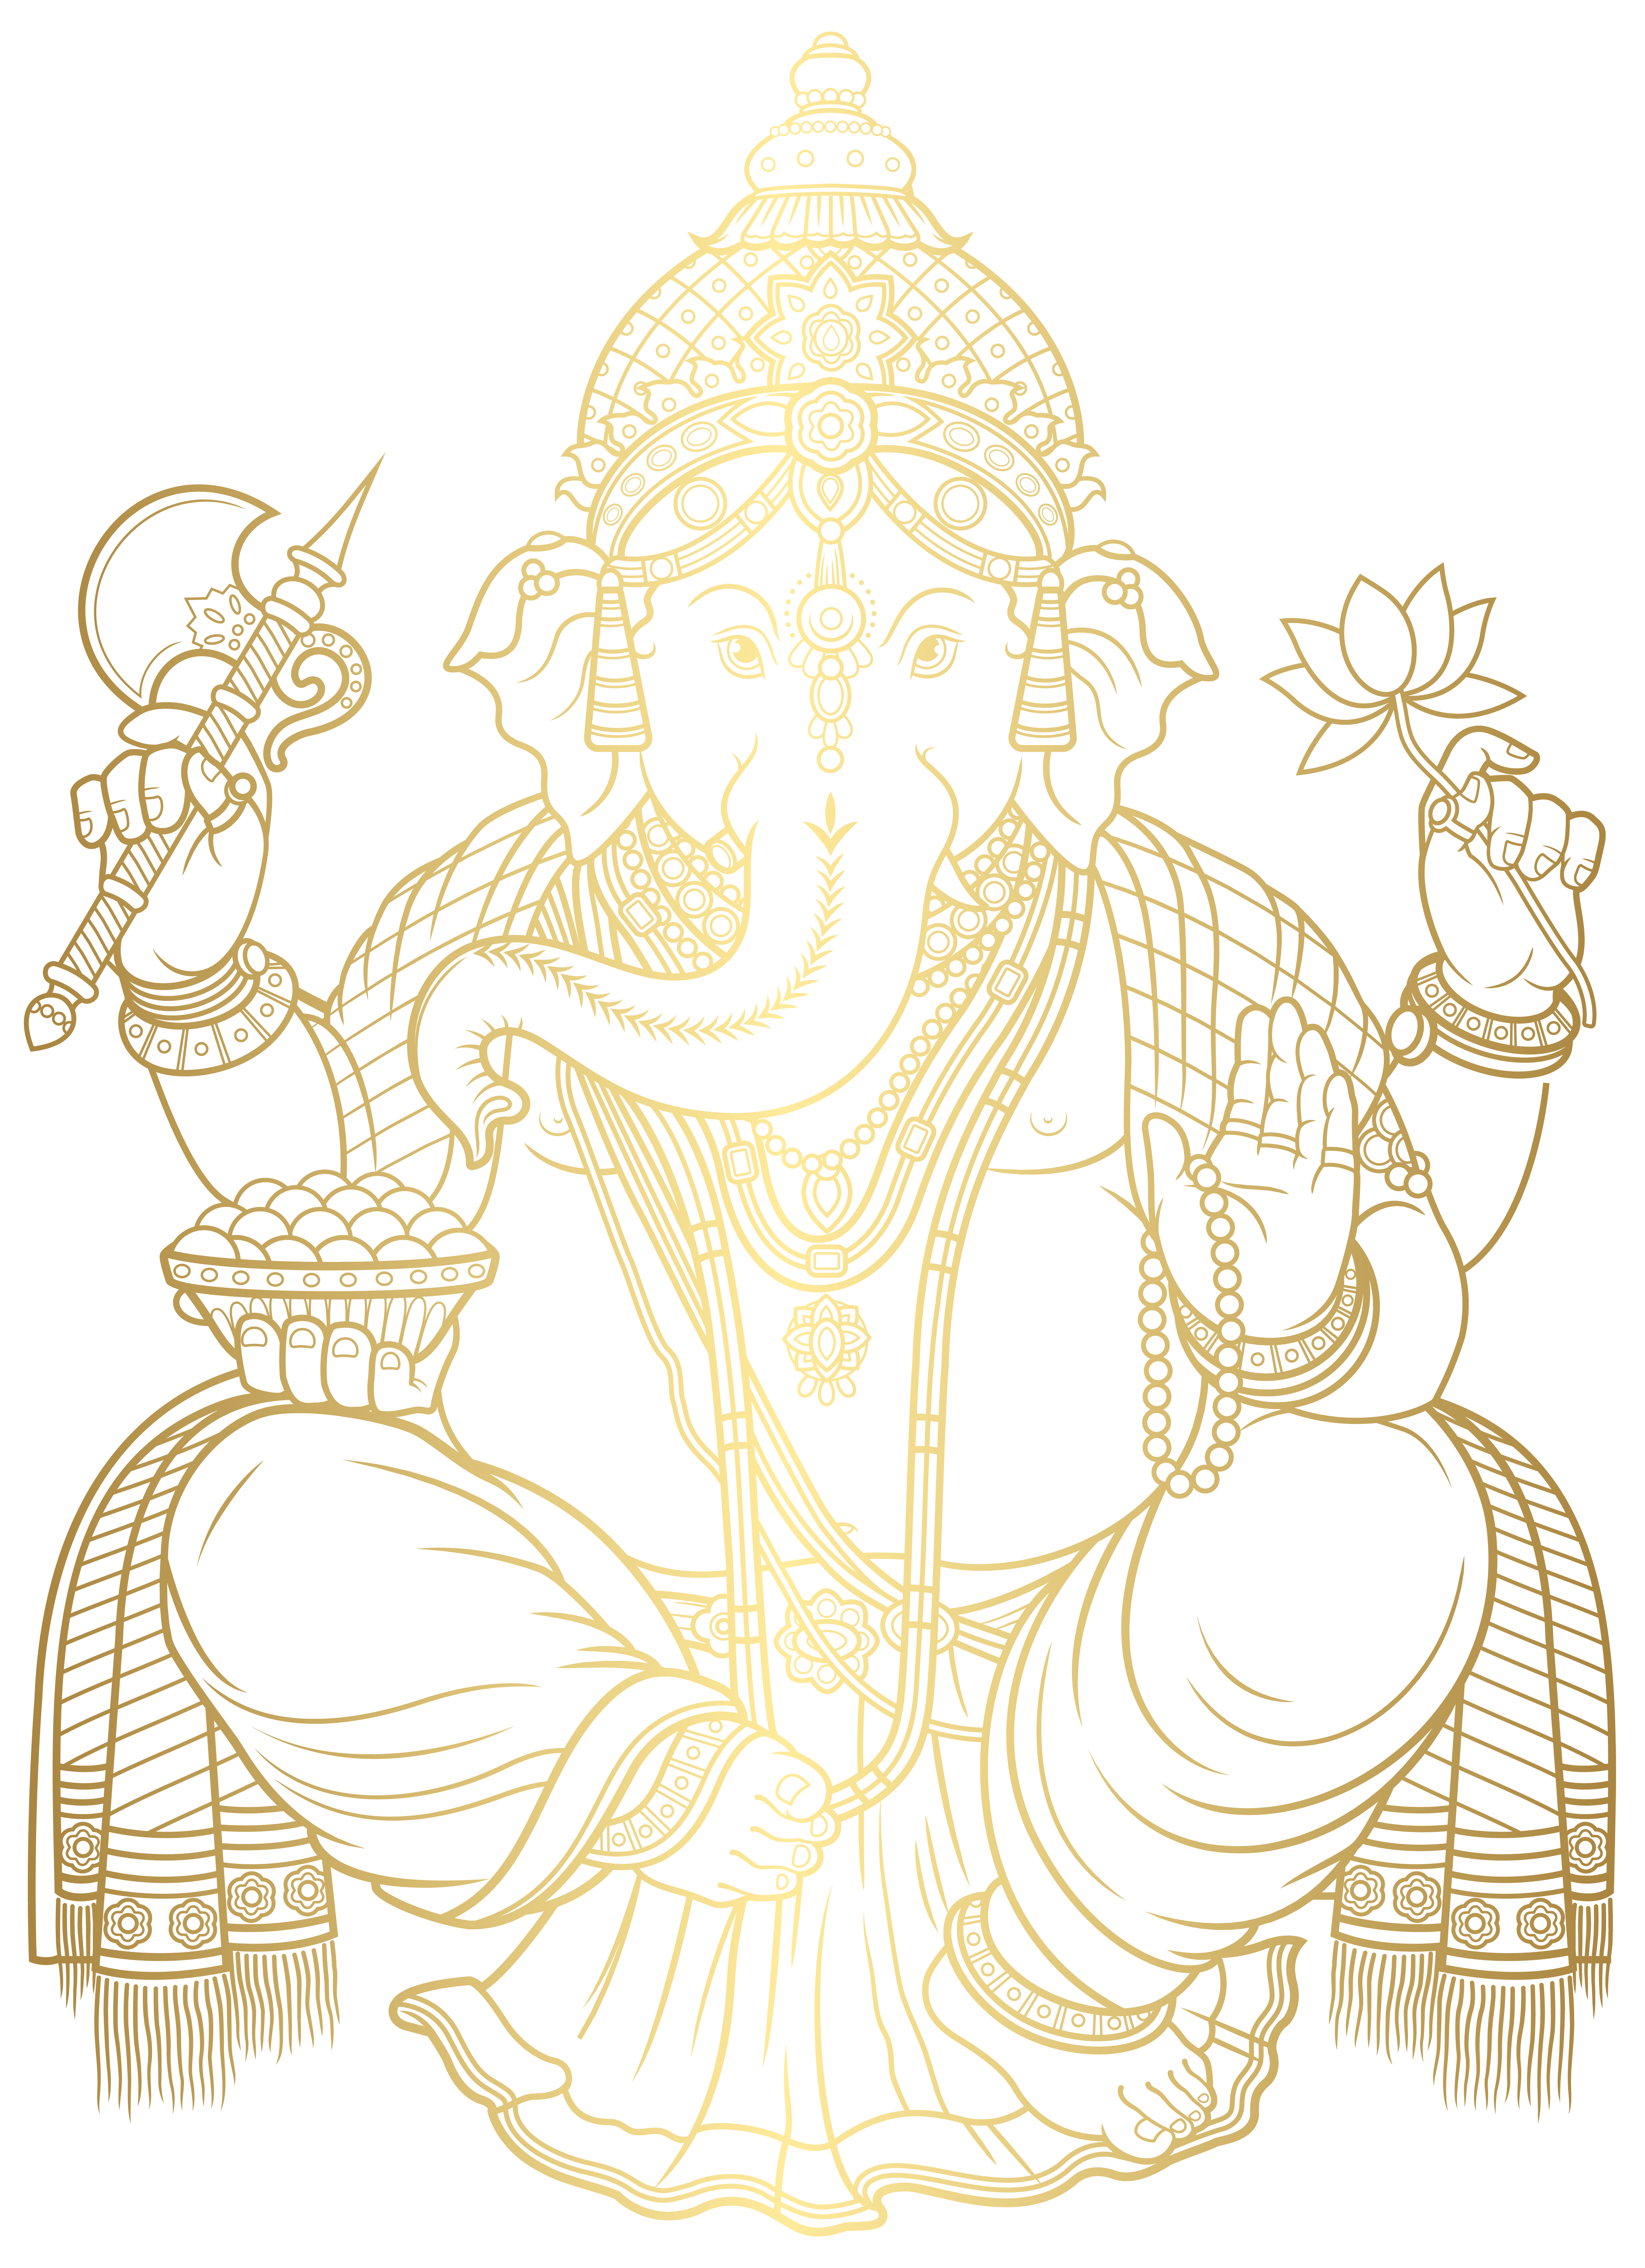 Ganesha gold png.